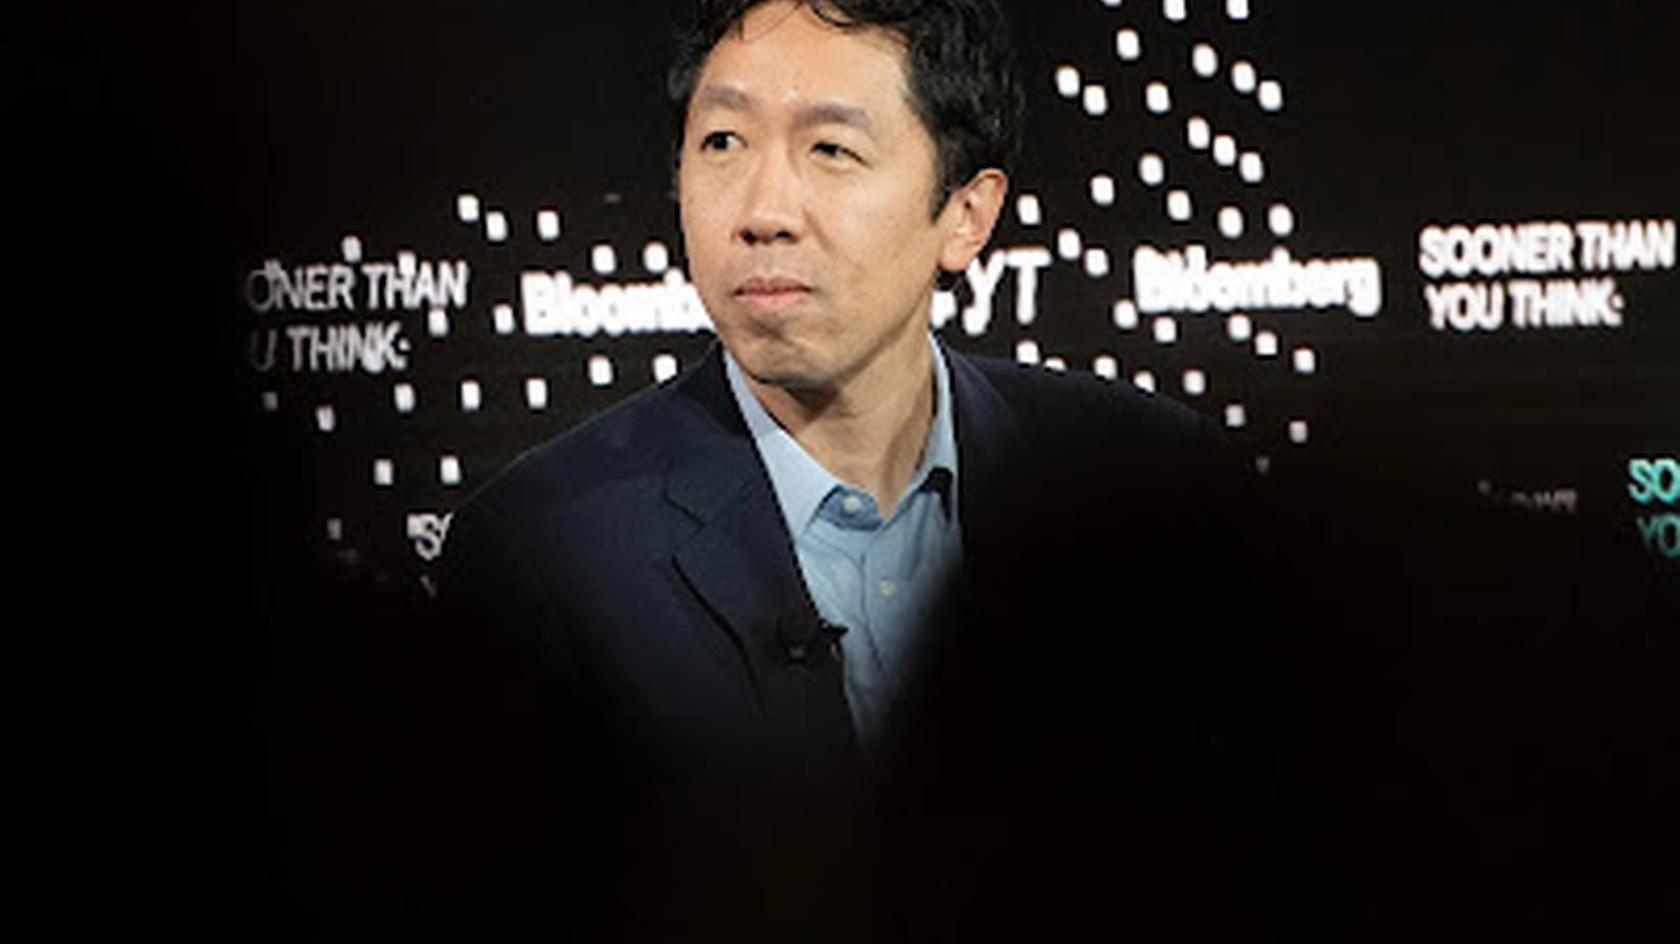 Эндрю Нг (Andrew Ng) участвовал в создании масштабных моделей глубокого обучения